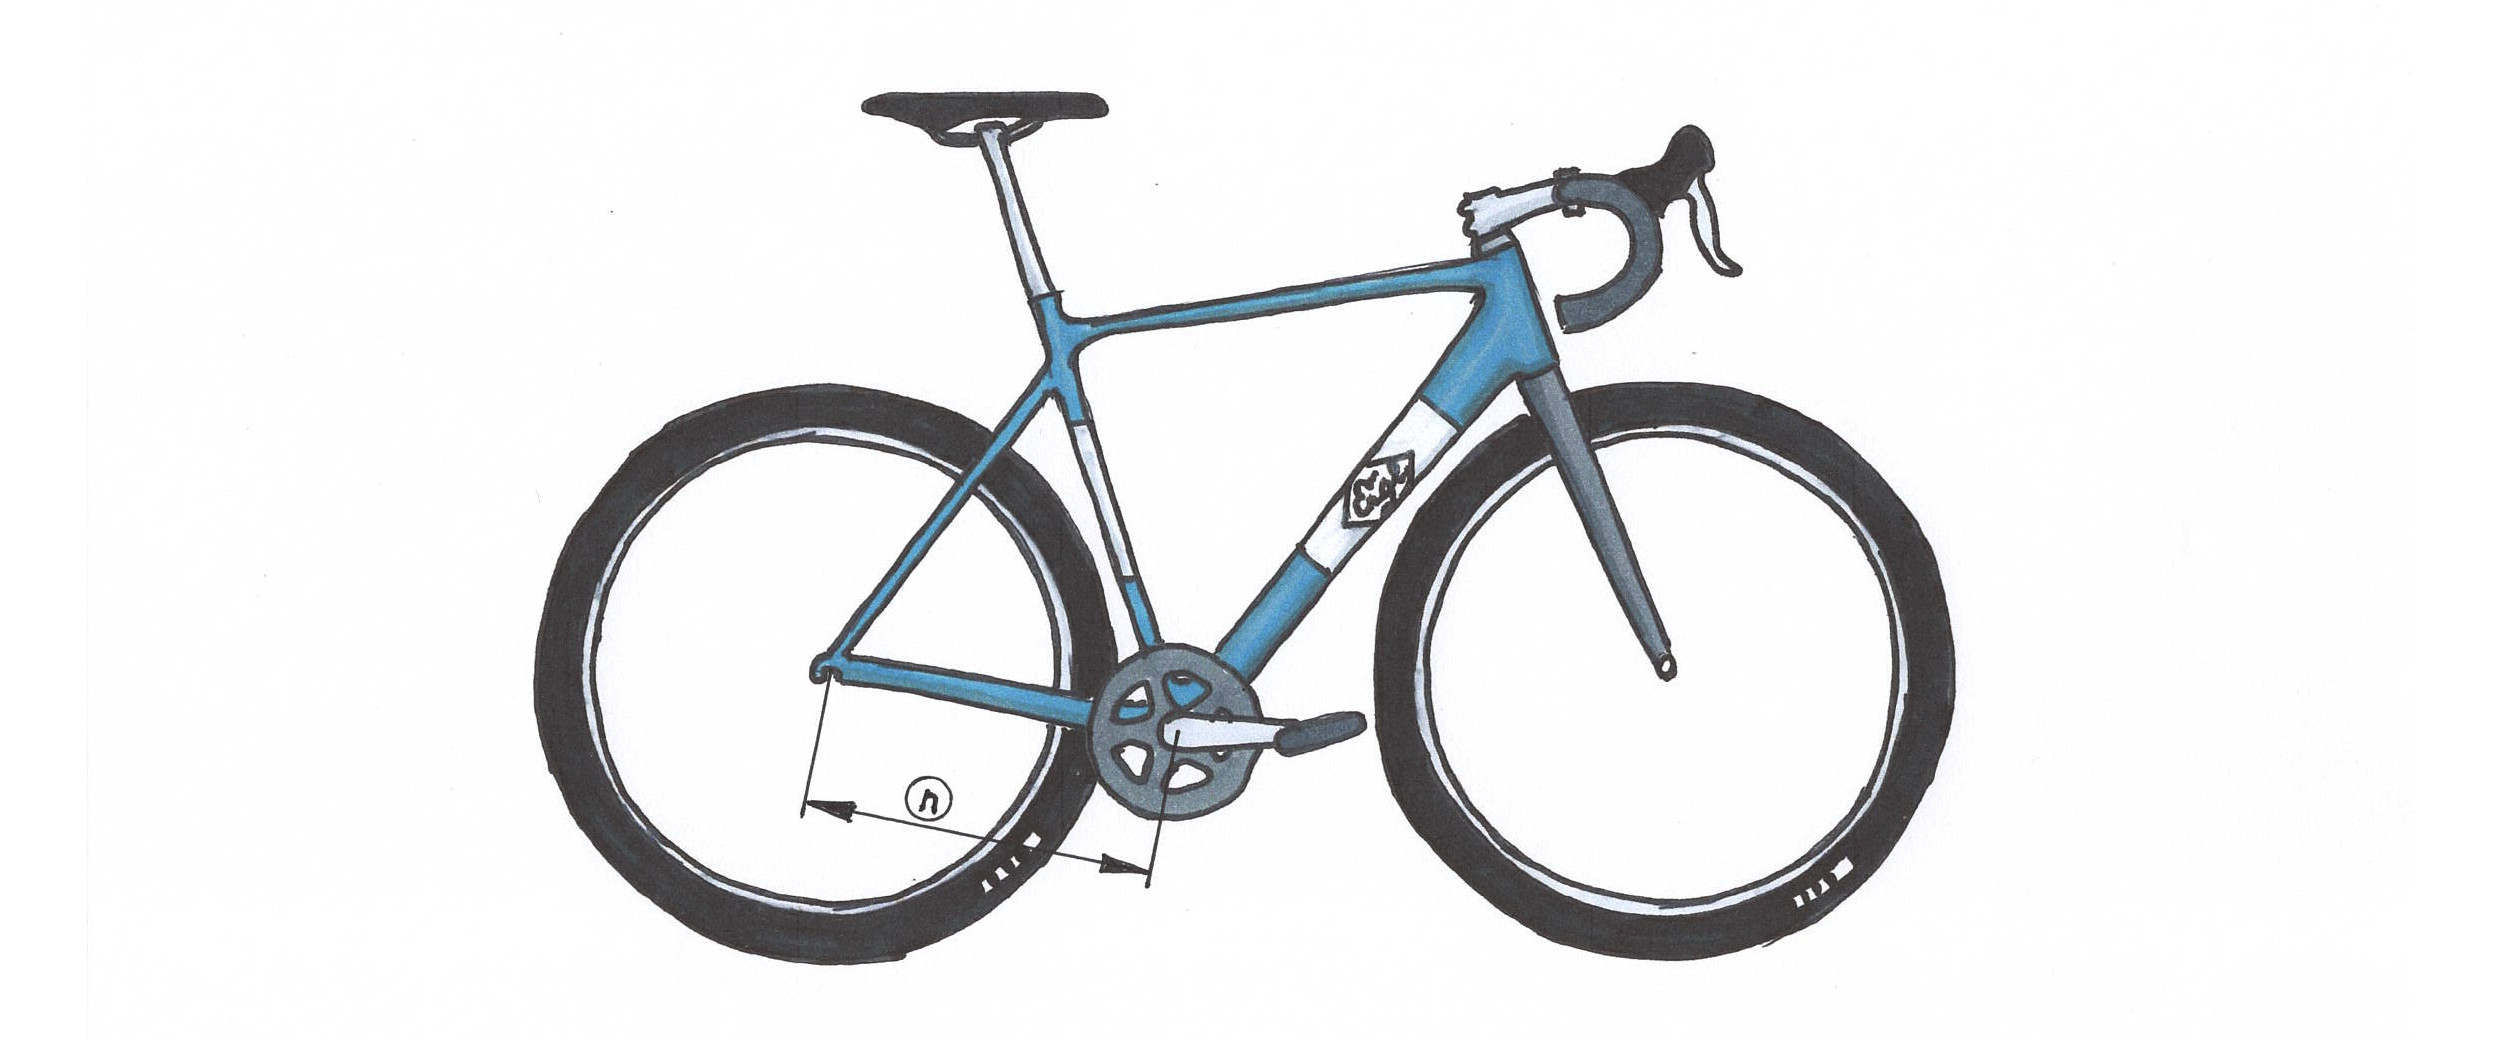 Bicycle diagram